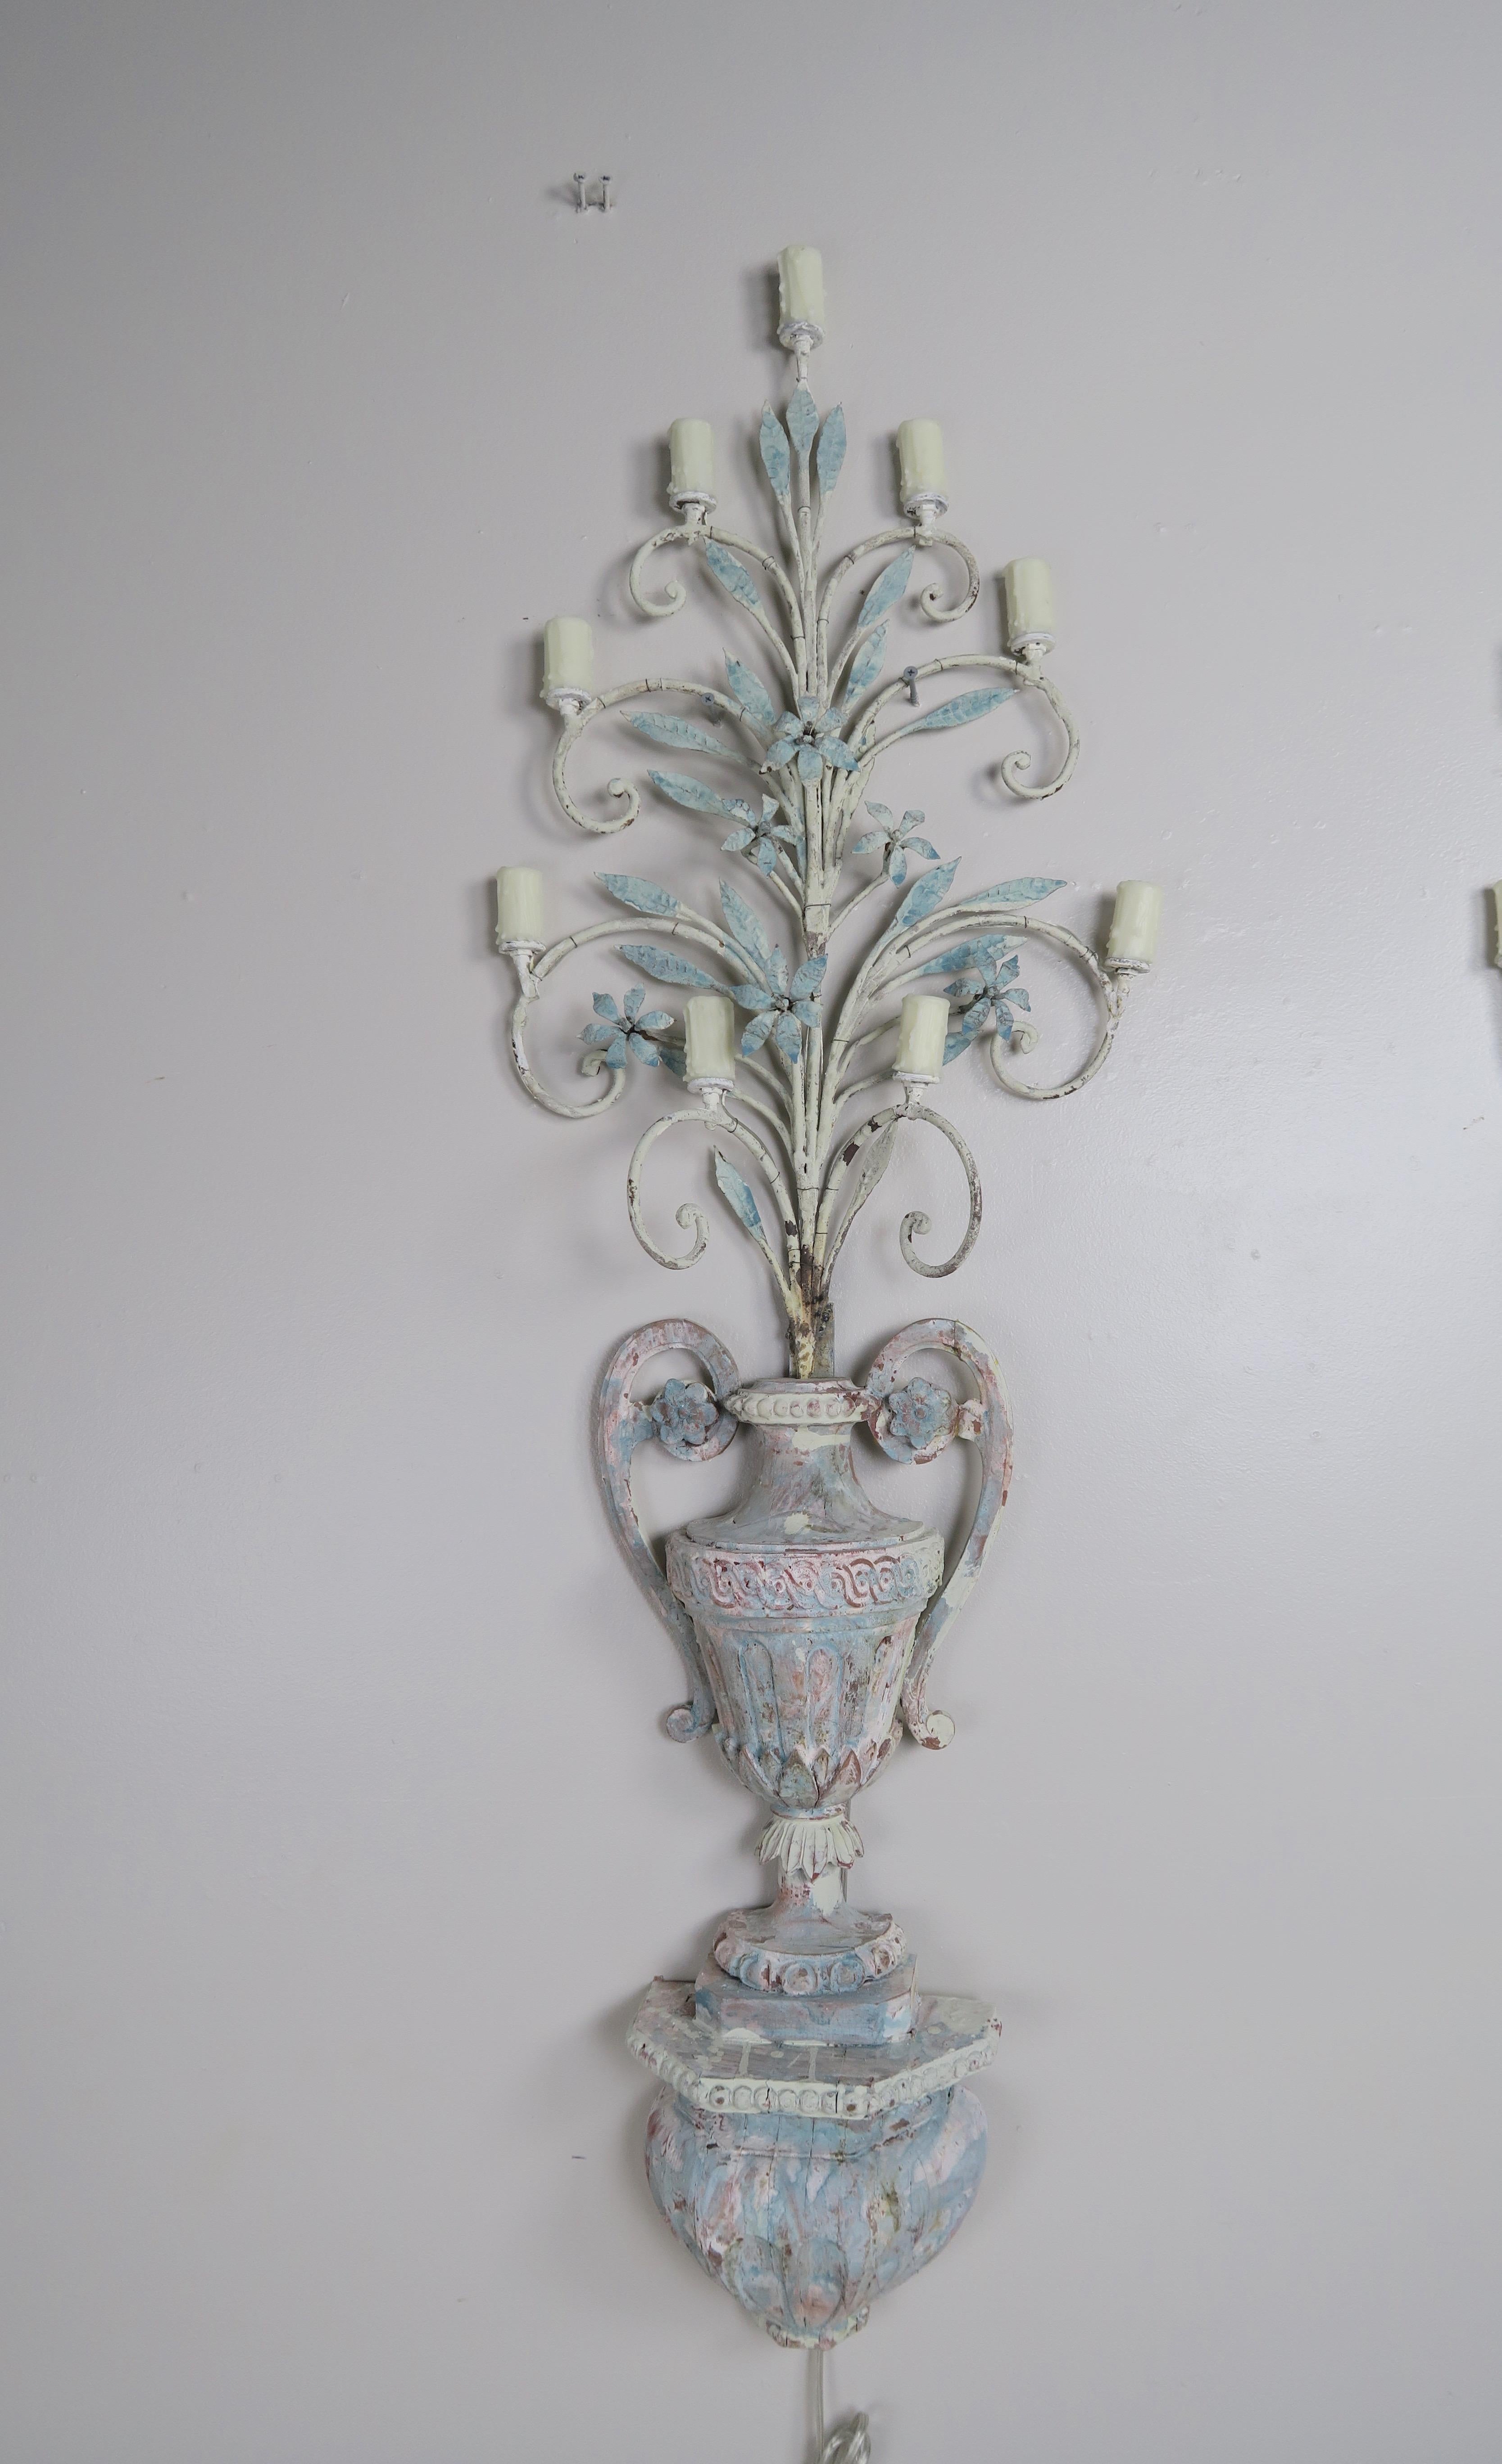 Paire d'appliques italiennes à 9 lumières peintes du 19e siècle. Les appliques étaient à l'origine destinées à accueillir des bougies. Les urnes sont sculptées à la main et peintes dans une douce couleur bleu/gris français. Des branches en fer forgé